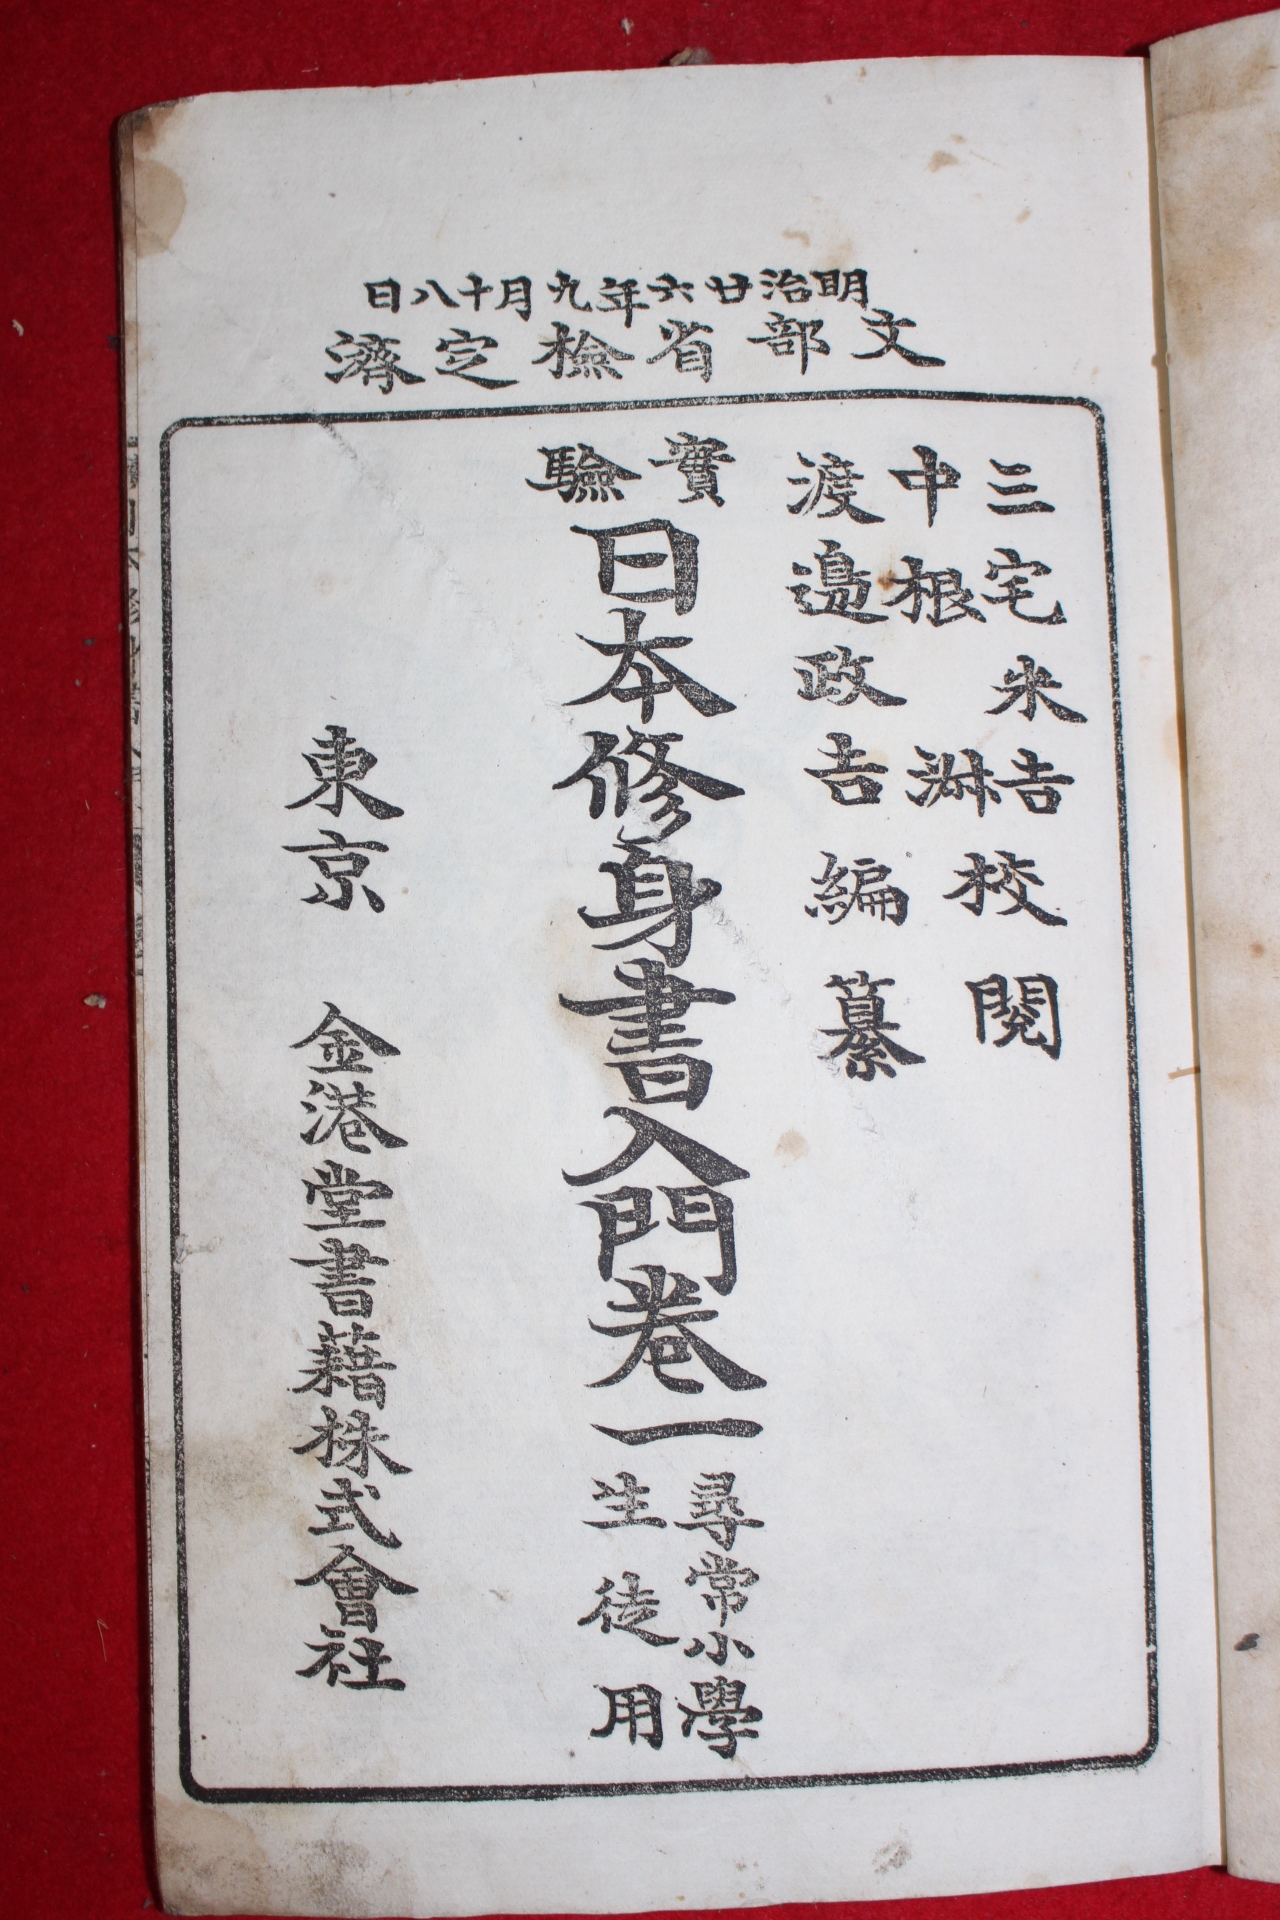 1893년(명치26년) 일본수신서입문(日本修身書入門) 권1